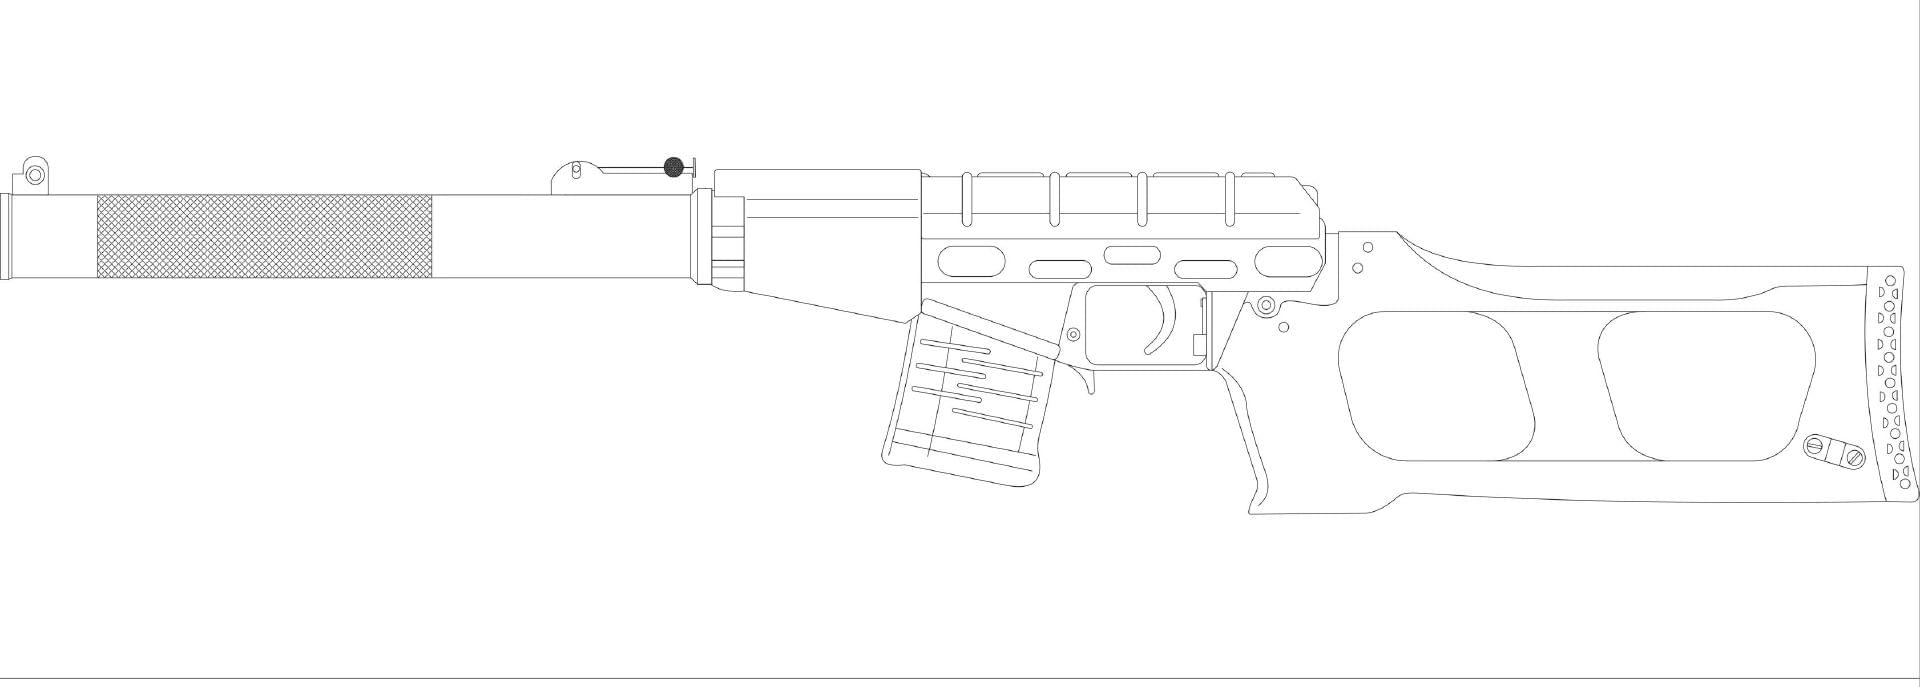 чертеж awp снайперской винтовки для дерева фото 31